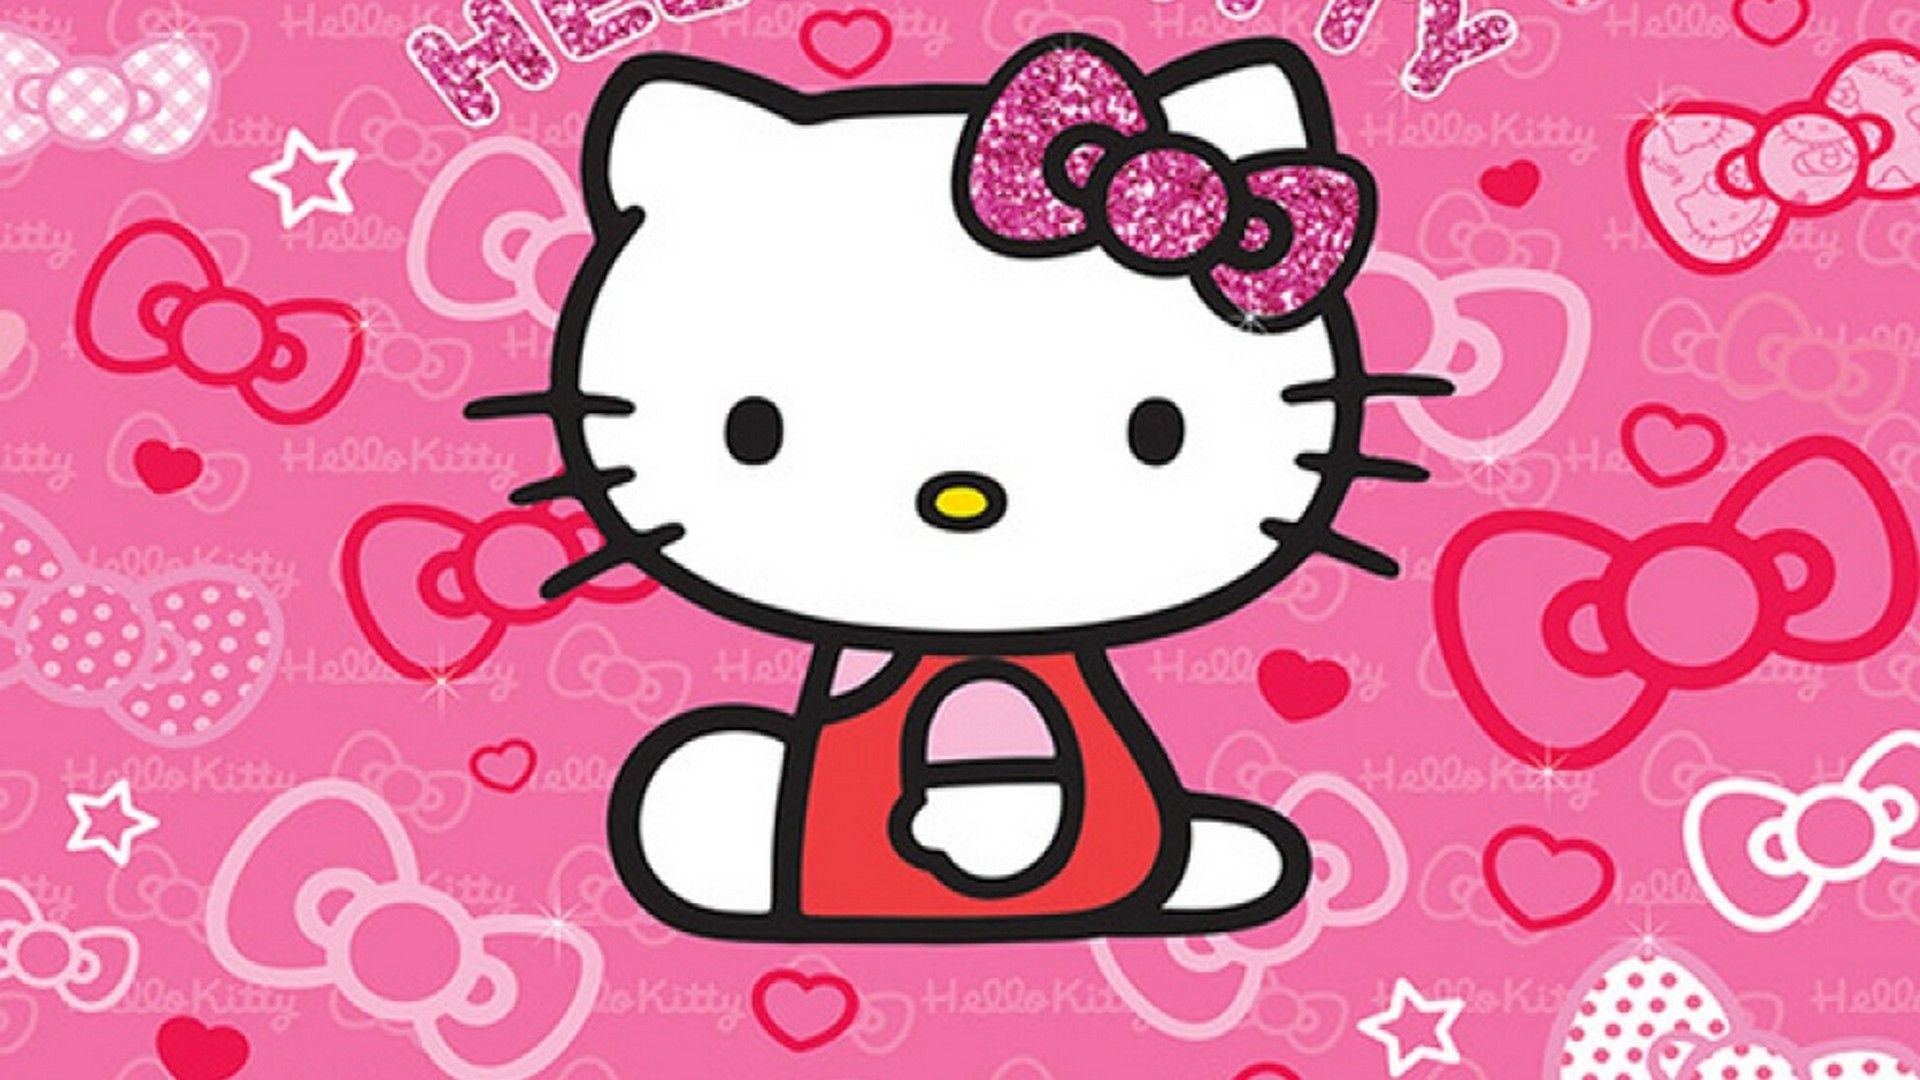 Wallpaper Sanrio Hello Kitty Desktop. Best HD Wallpaper. Hello kitty wallpaper, Sanrio hello kitty, Hello kitty